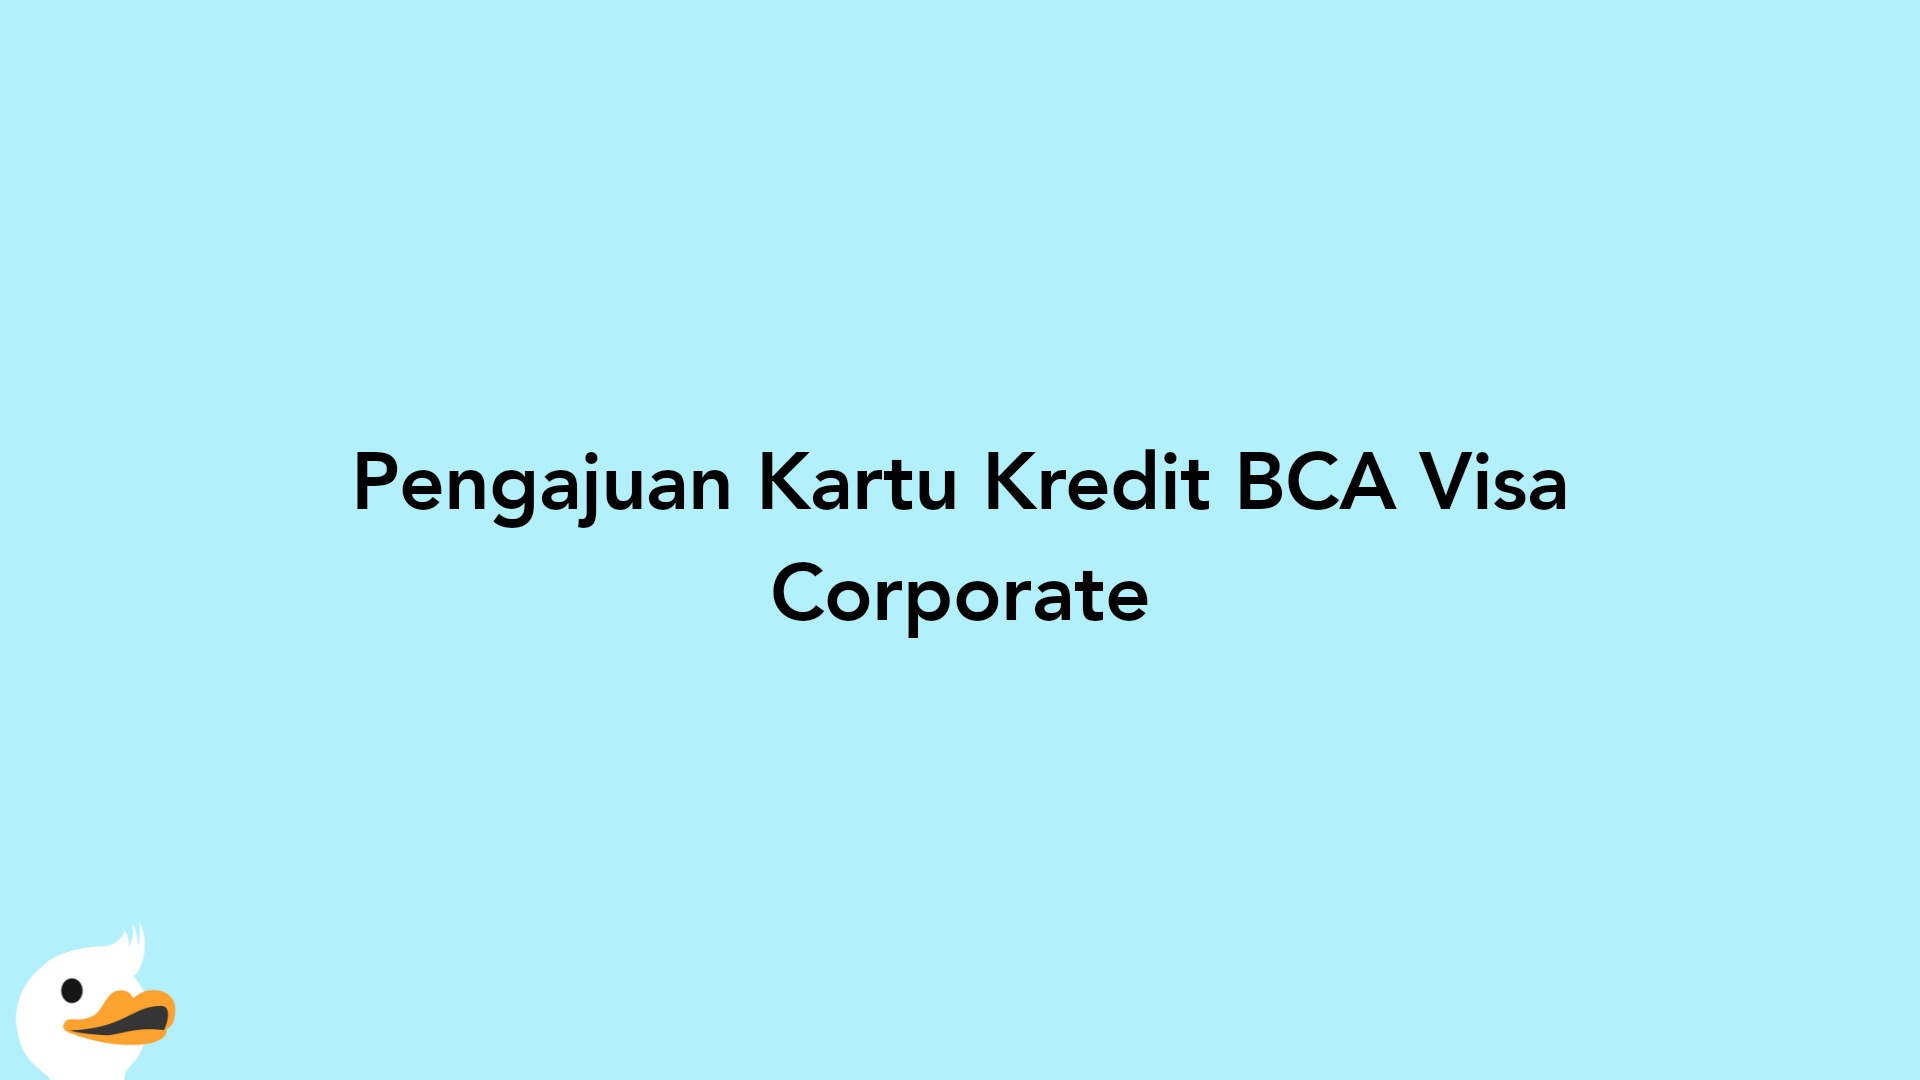 Pengajuan Kartu Kredit BCA Visa Corporate